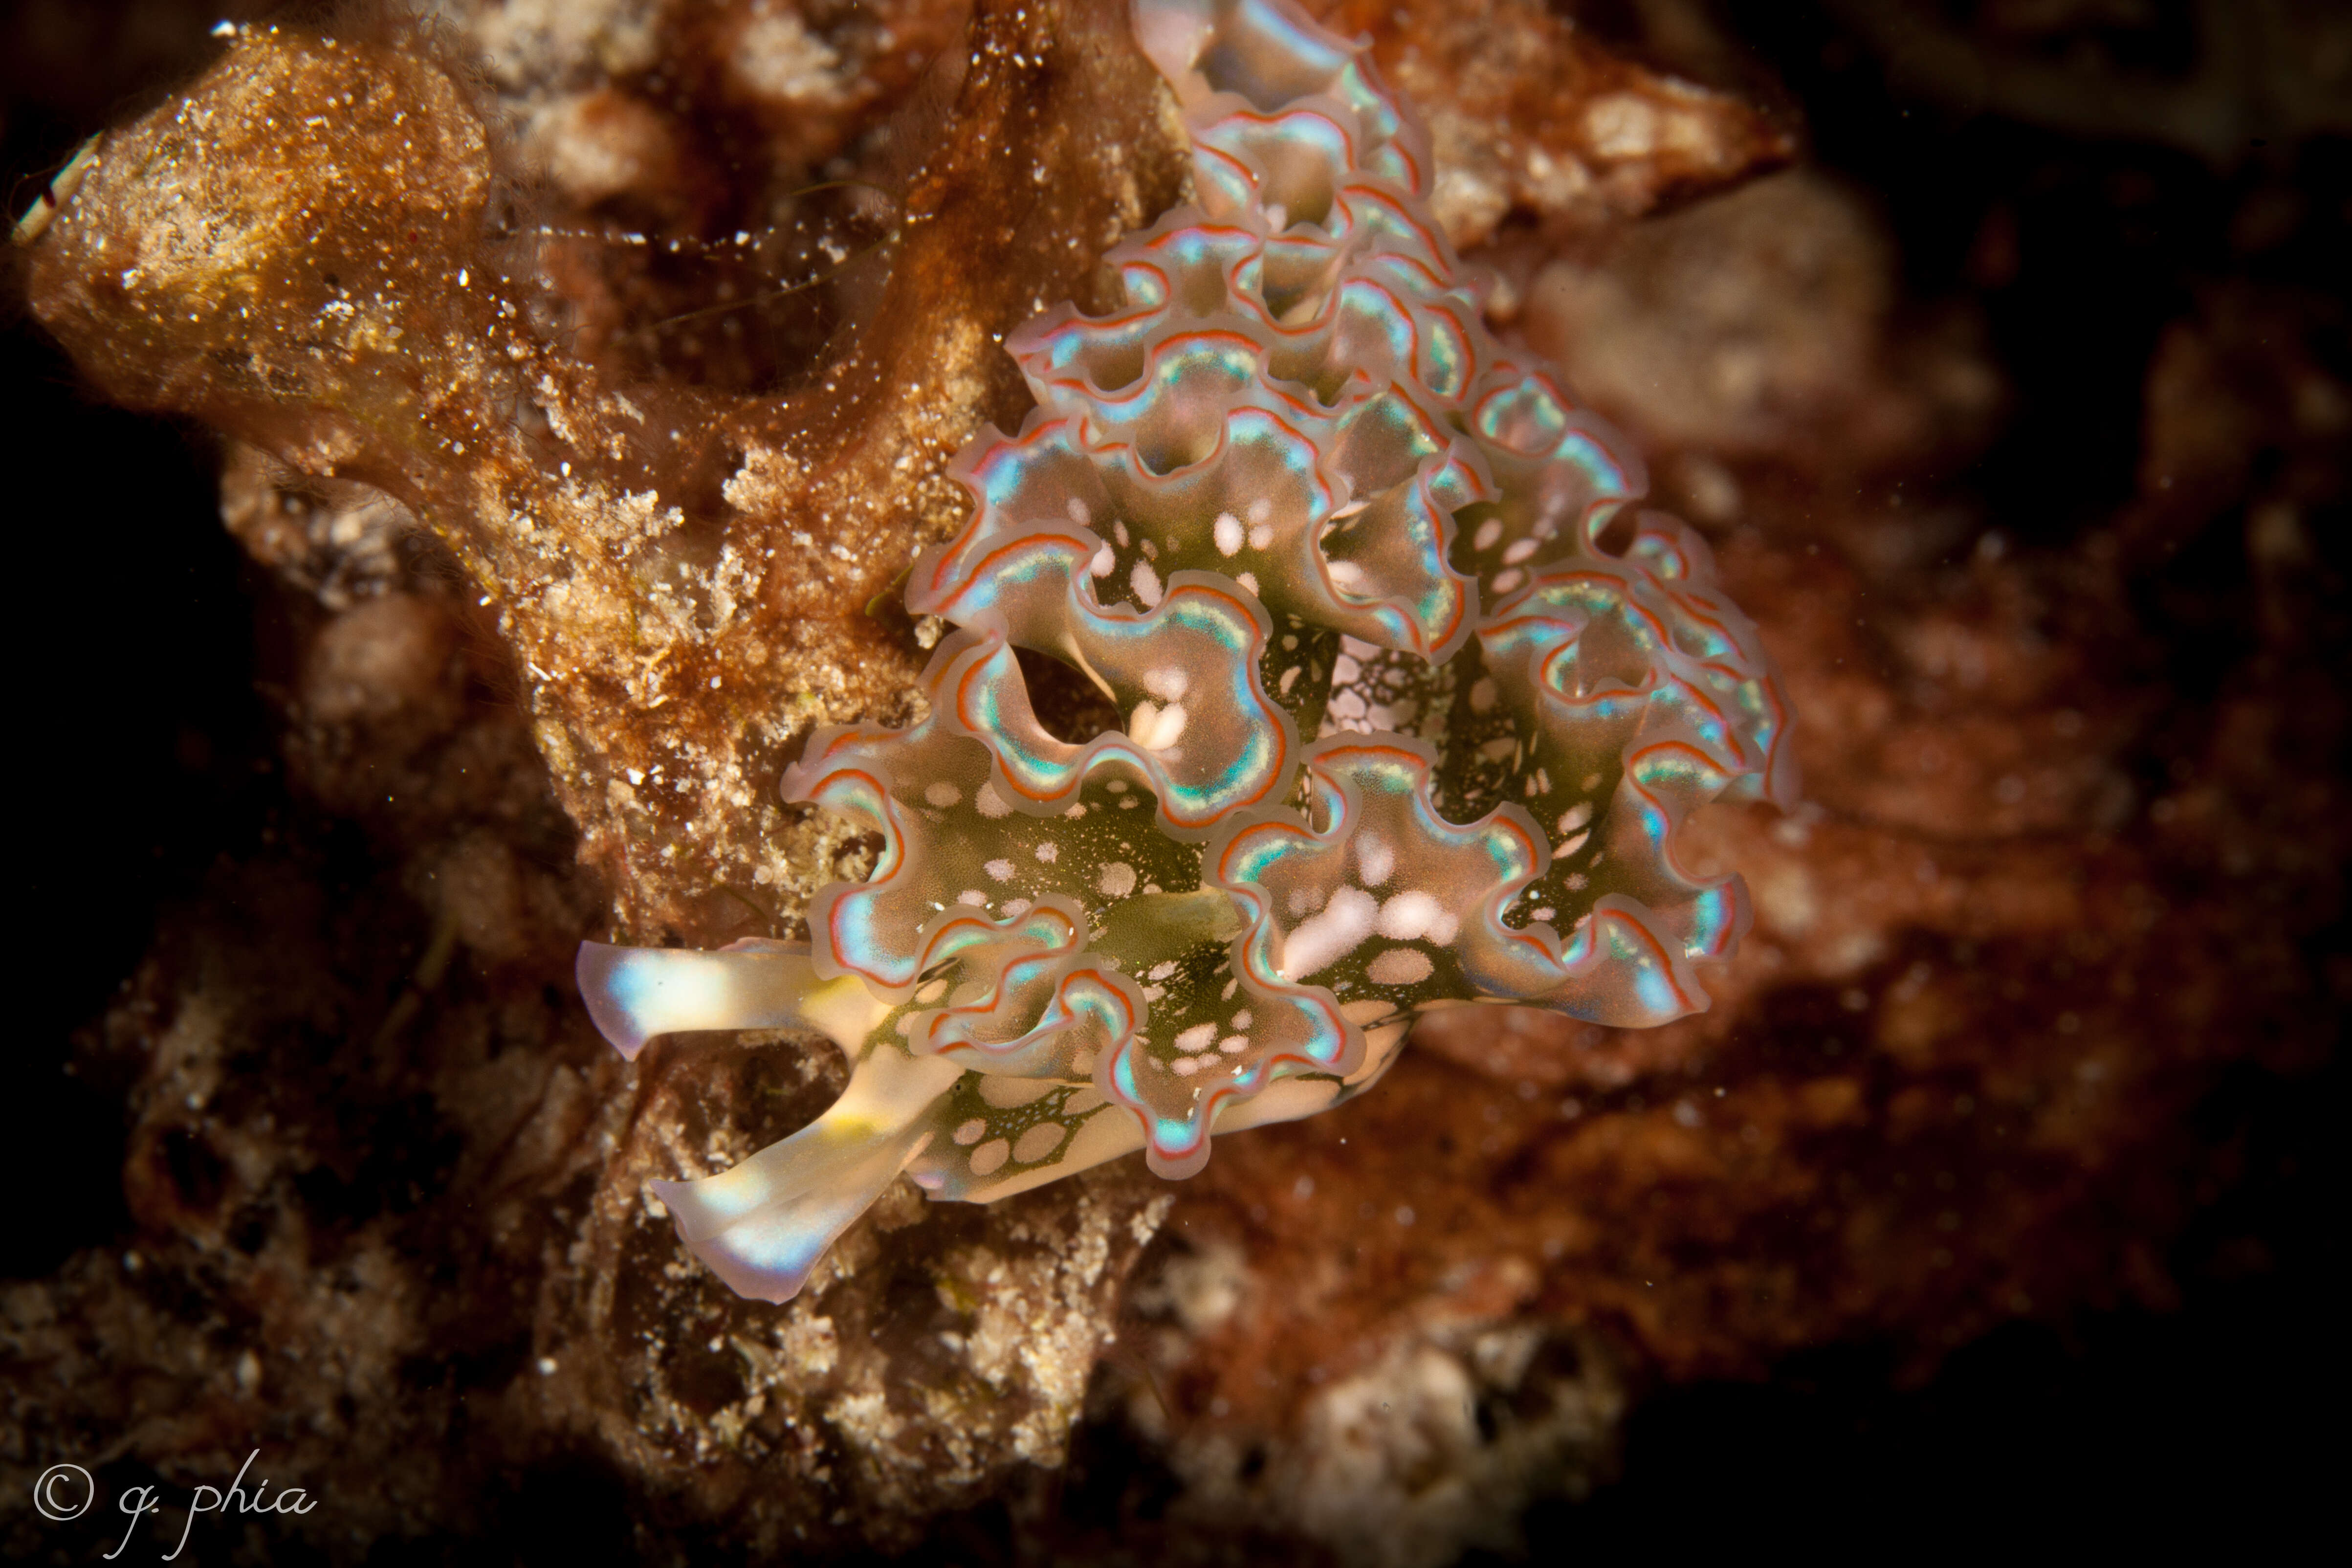 Image of lettuce sea slug